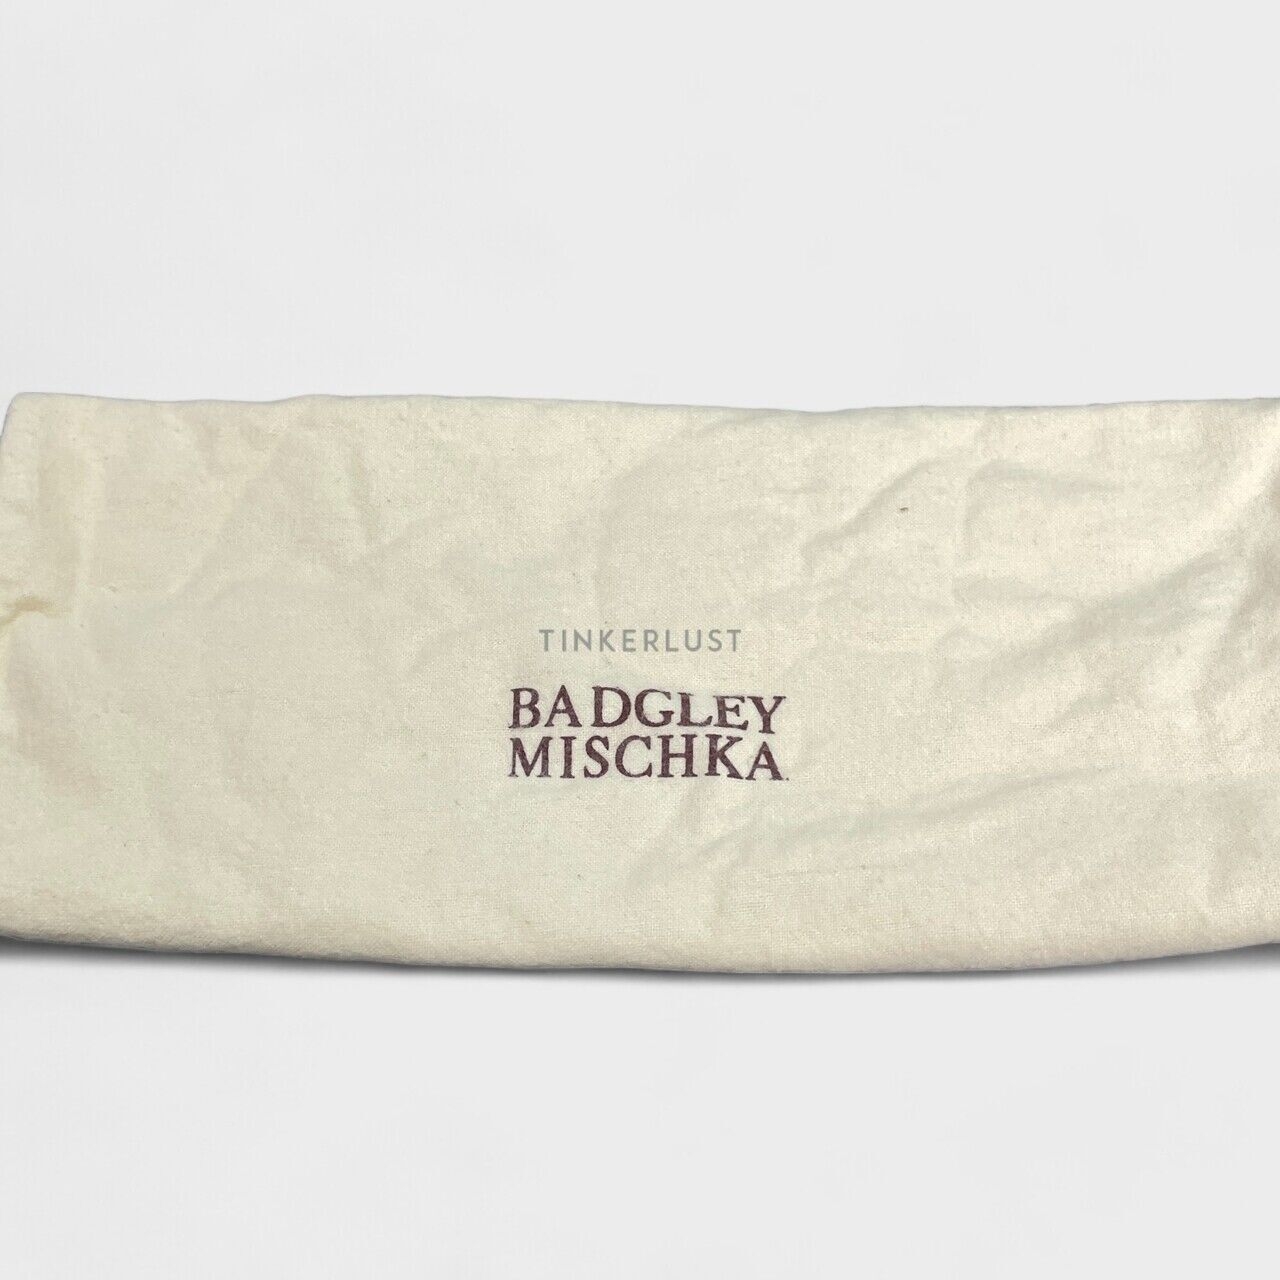 Badgley Mischka Viola White Satin Crystal Embellished Pumps Heels